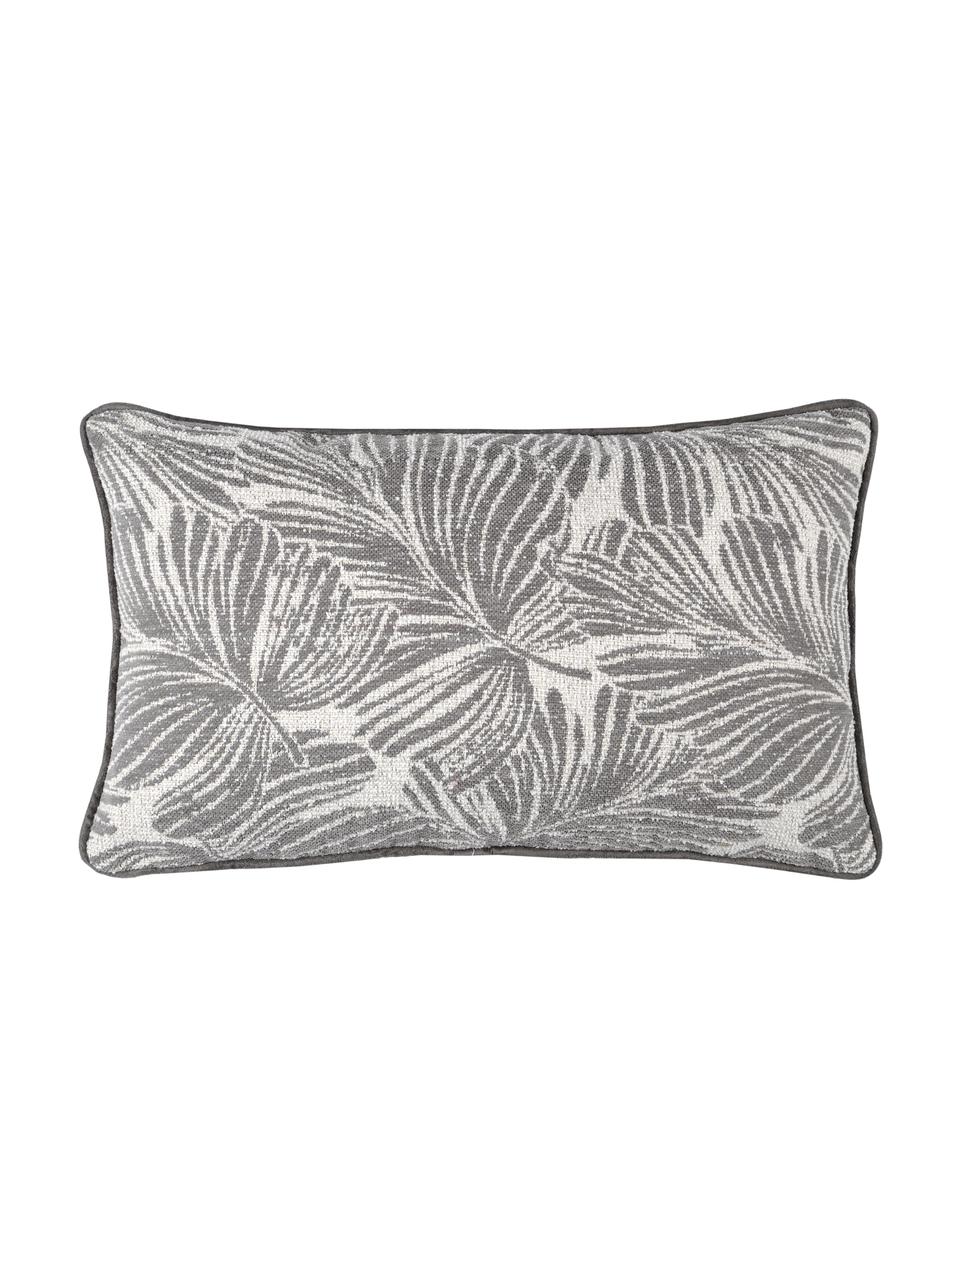 Kissen Hiro mit Kederumrandung und Blattmotiv, mit Inlett, Polyester, Dunkelgrau, Weiß, 30 x 50 cm